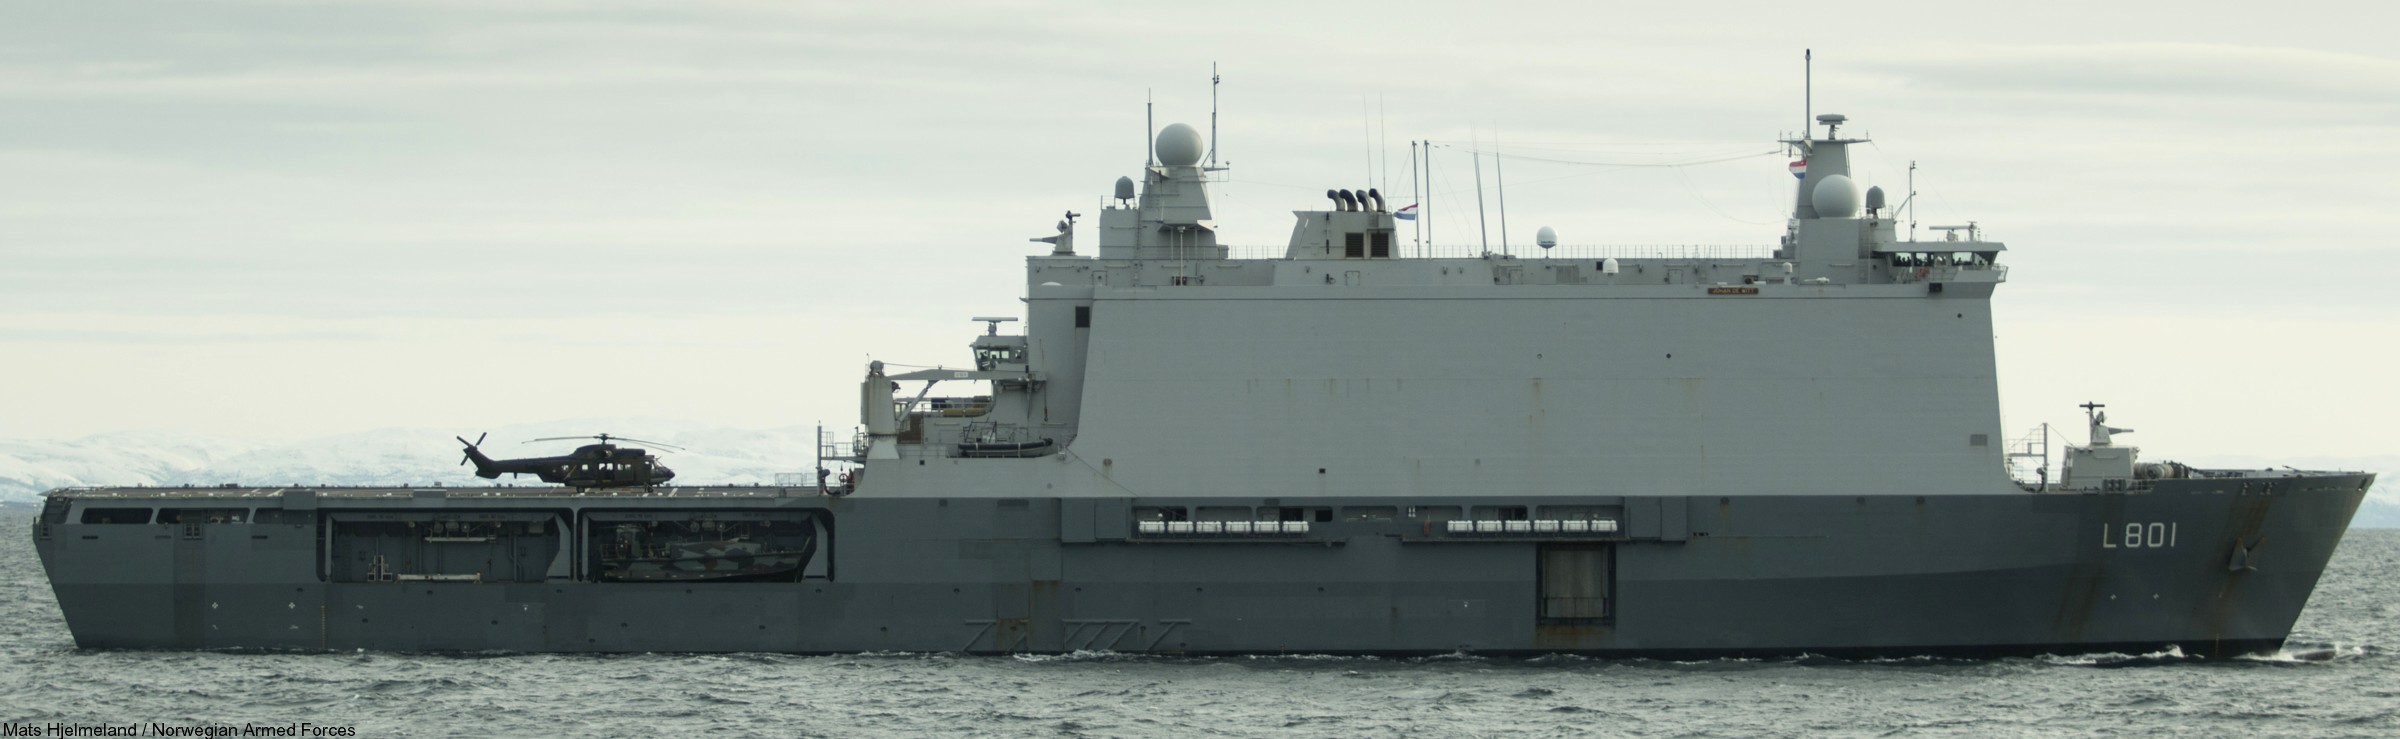 l-801 hnlms johan de witt amphibious ship landing platform dock lpd royal netherlands navy 43